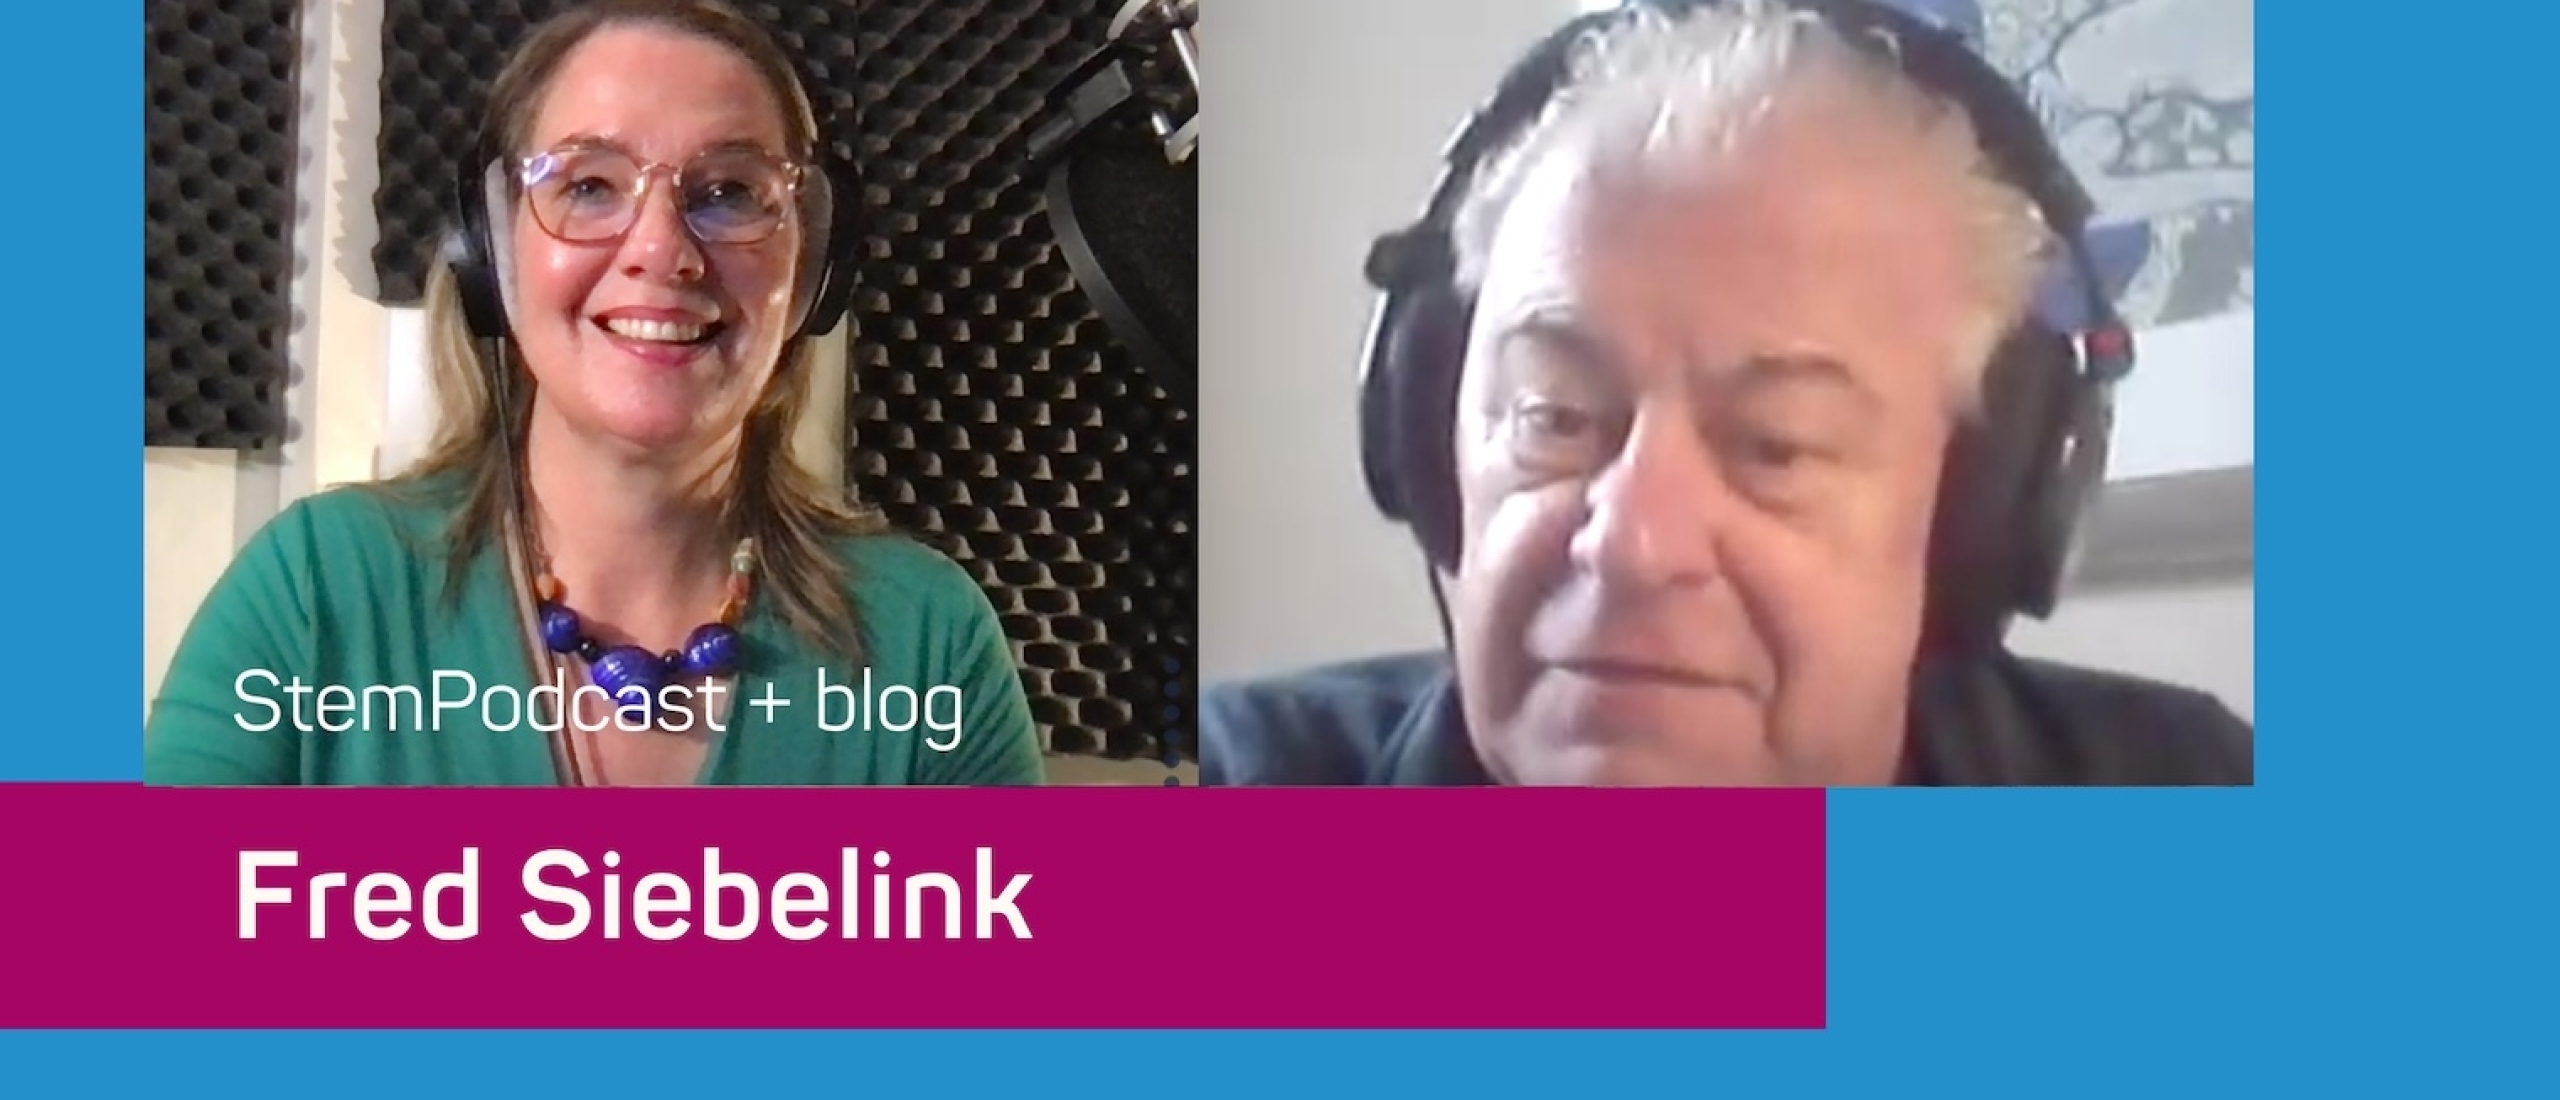 Radio-fenomeen Fred Siebelink in de StemPodcast: ‘Zeg eens iets onverwachts als je presenteert. Dan heb je meteen de aandacht weer’